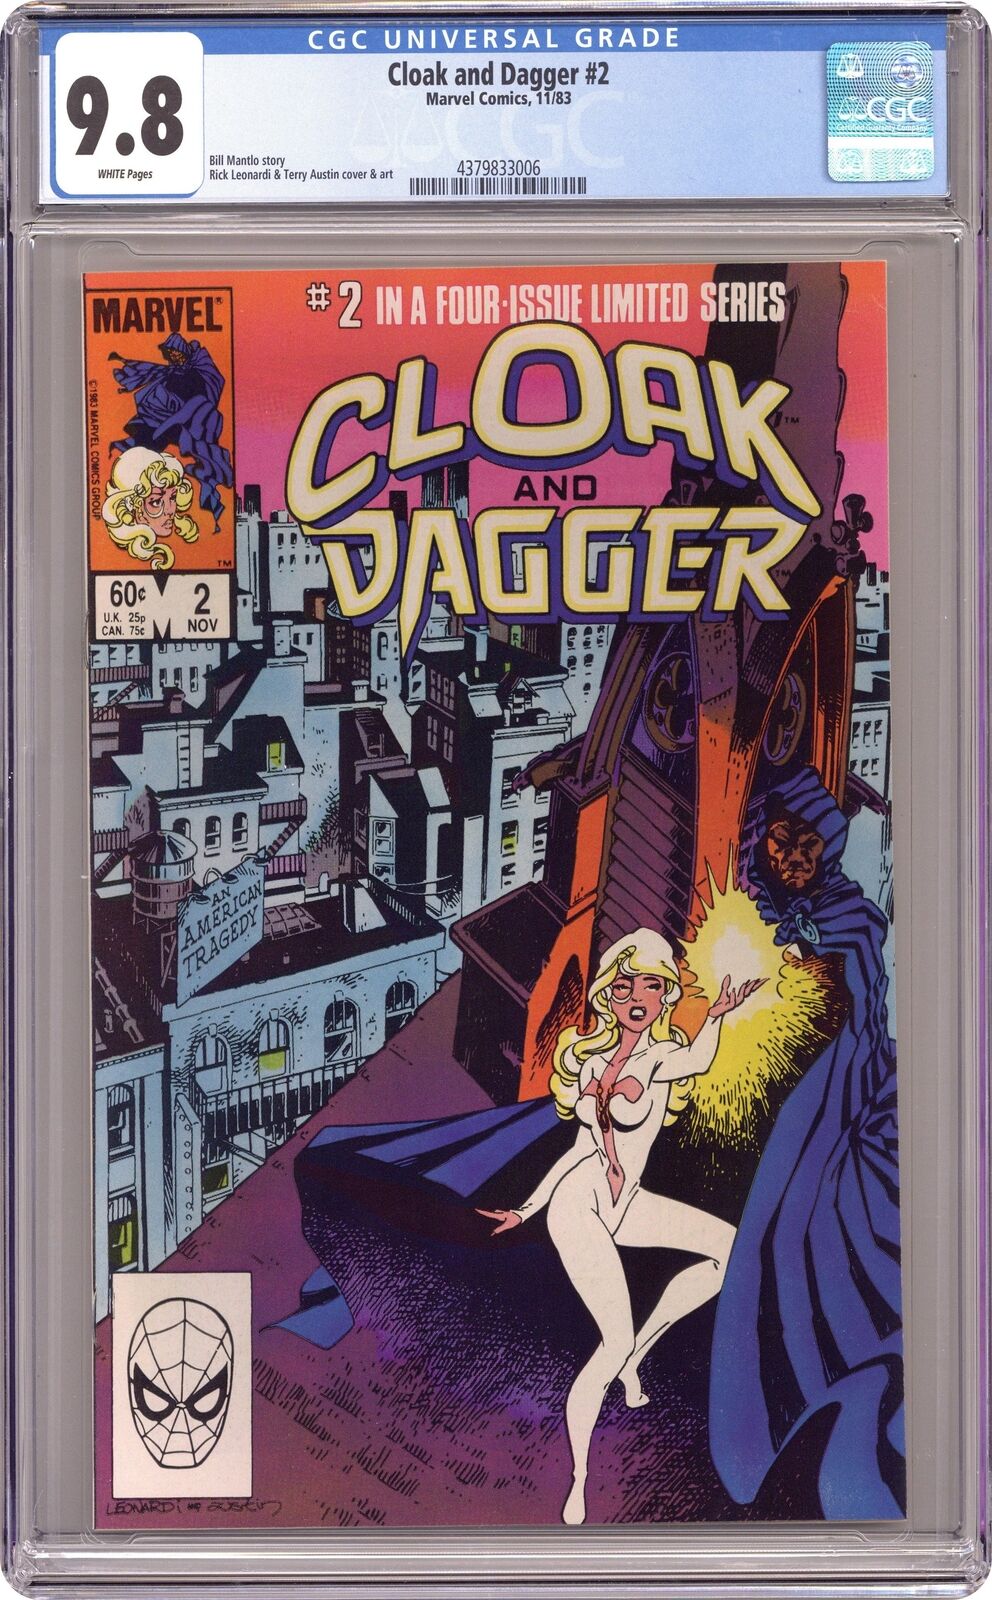 Cloak and Dagger #2 CGC 9.8 1983 4379833006